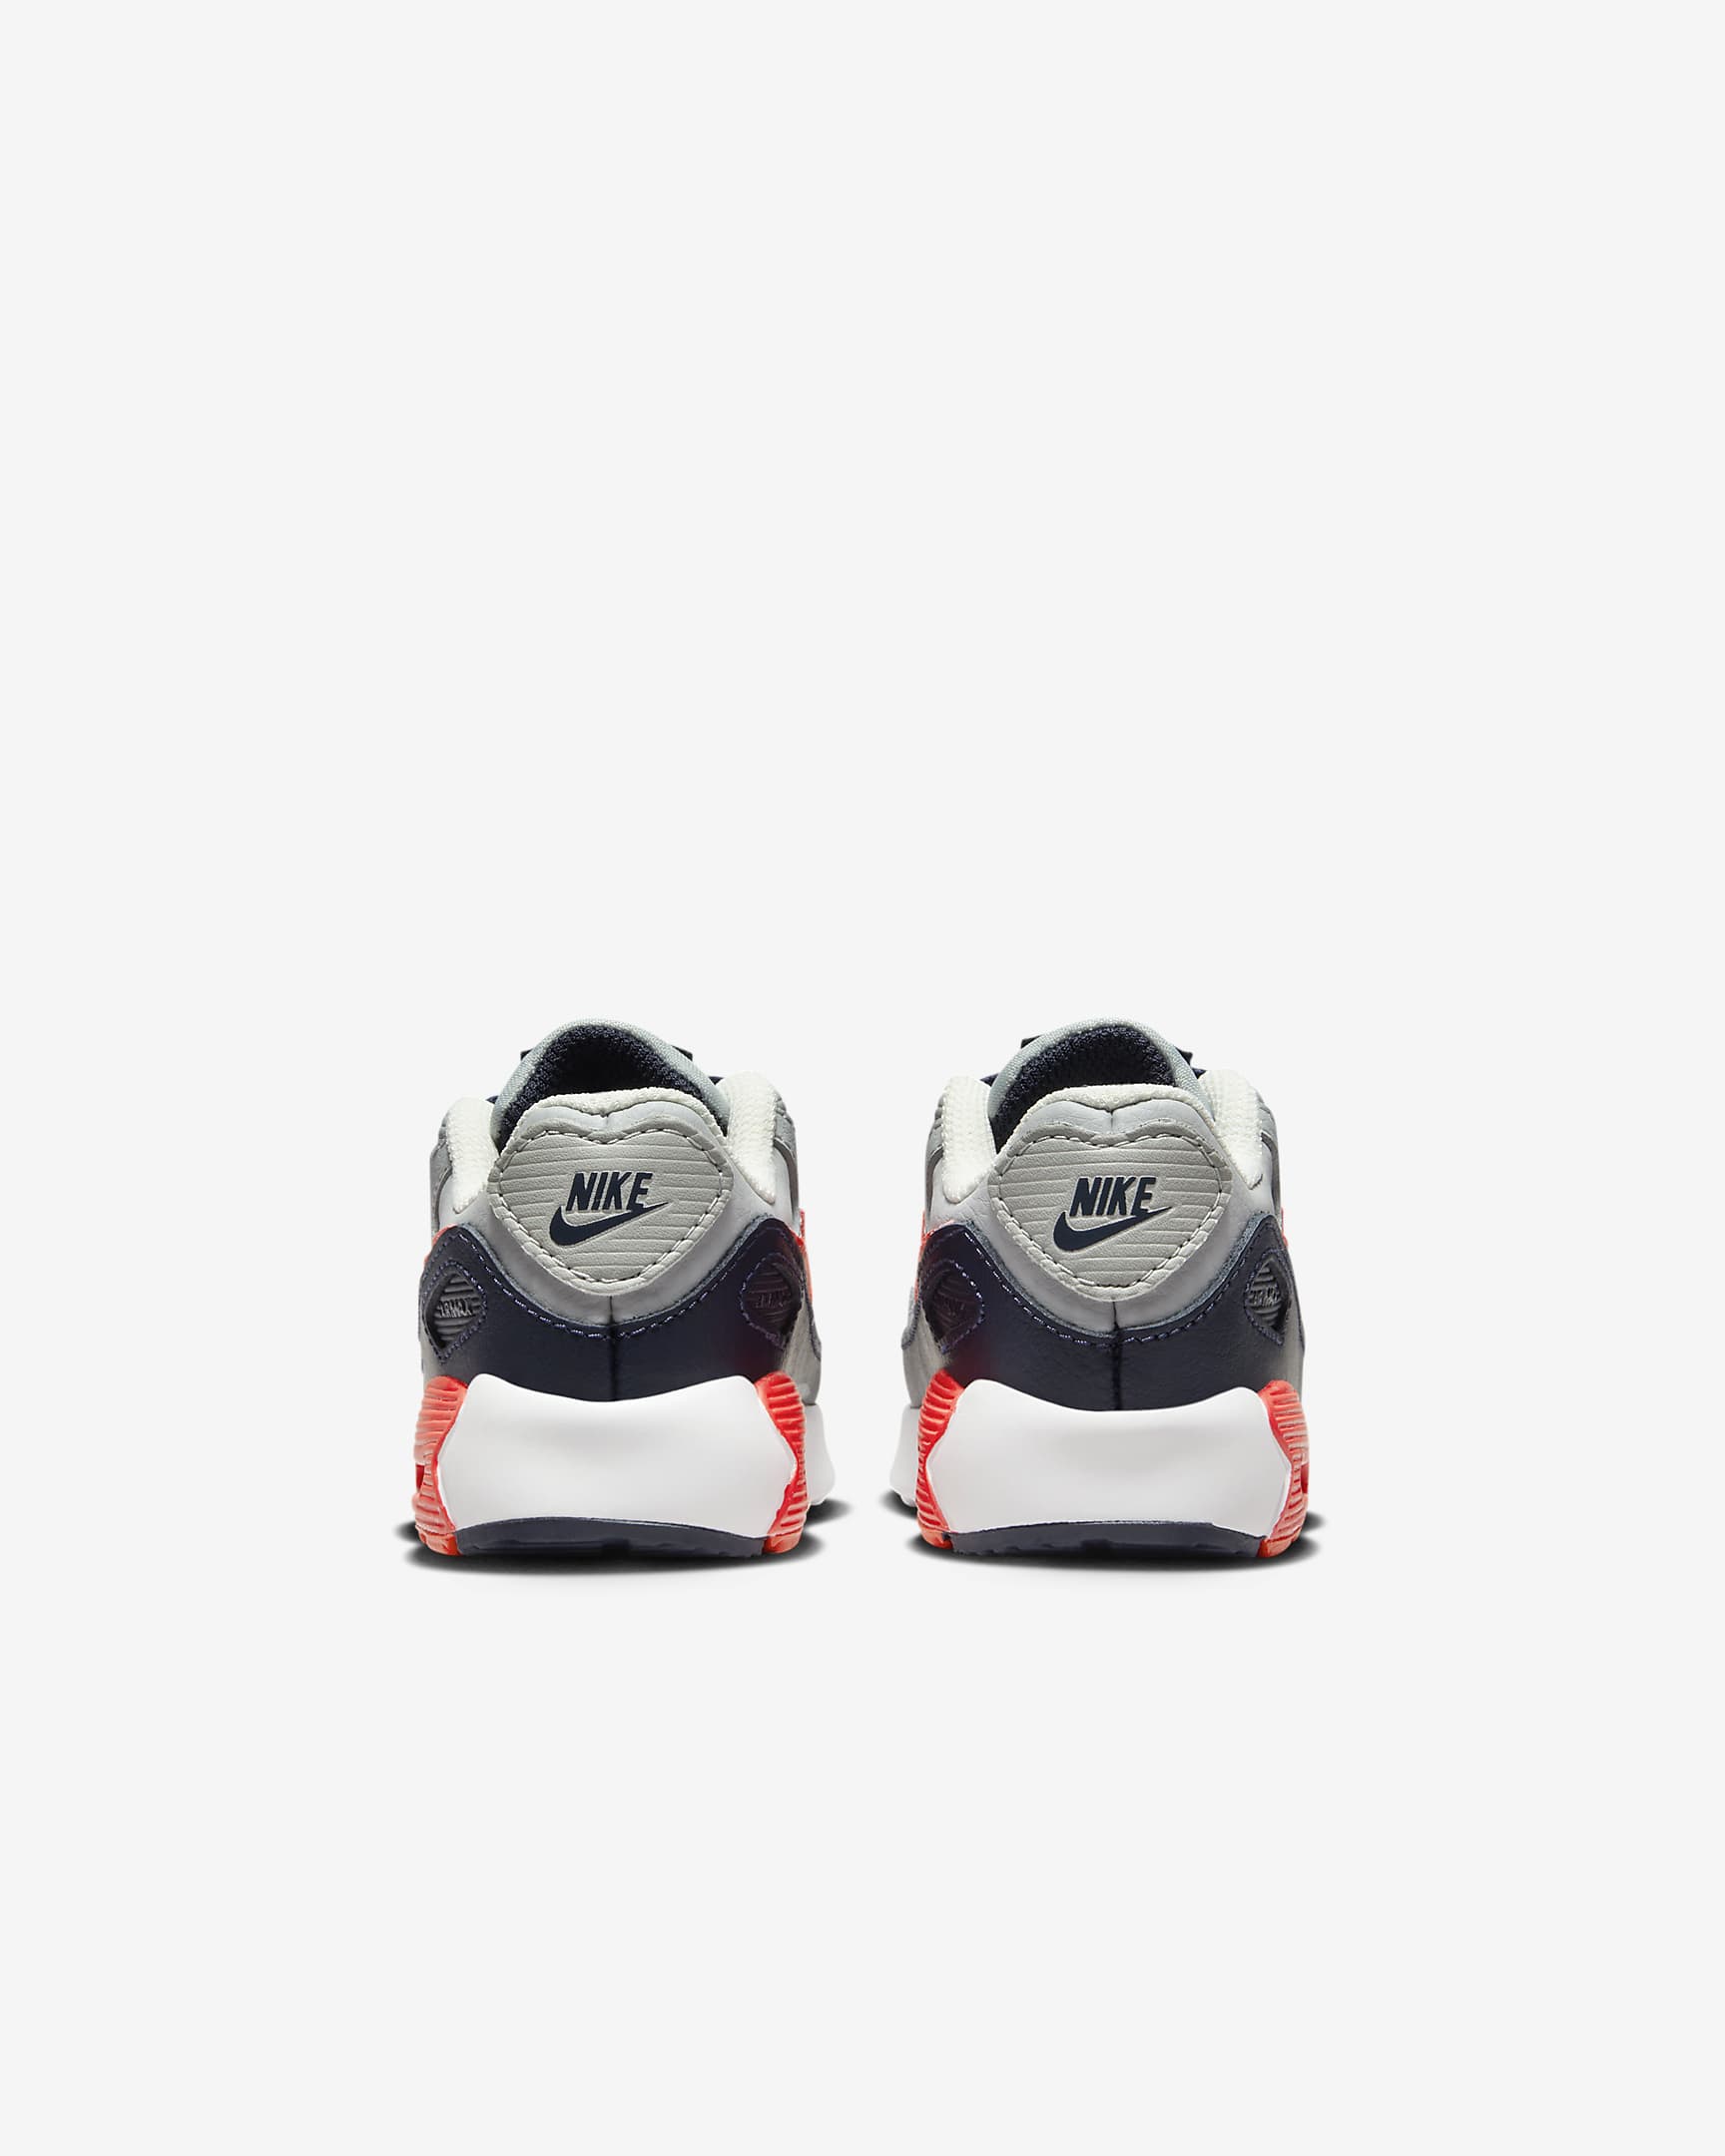 Nike Air Max 90 LTR Baby/Toddler Shoes. Nike AT